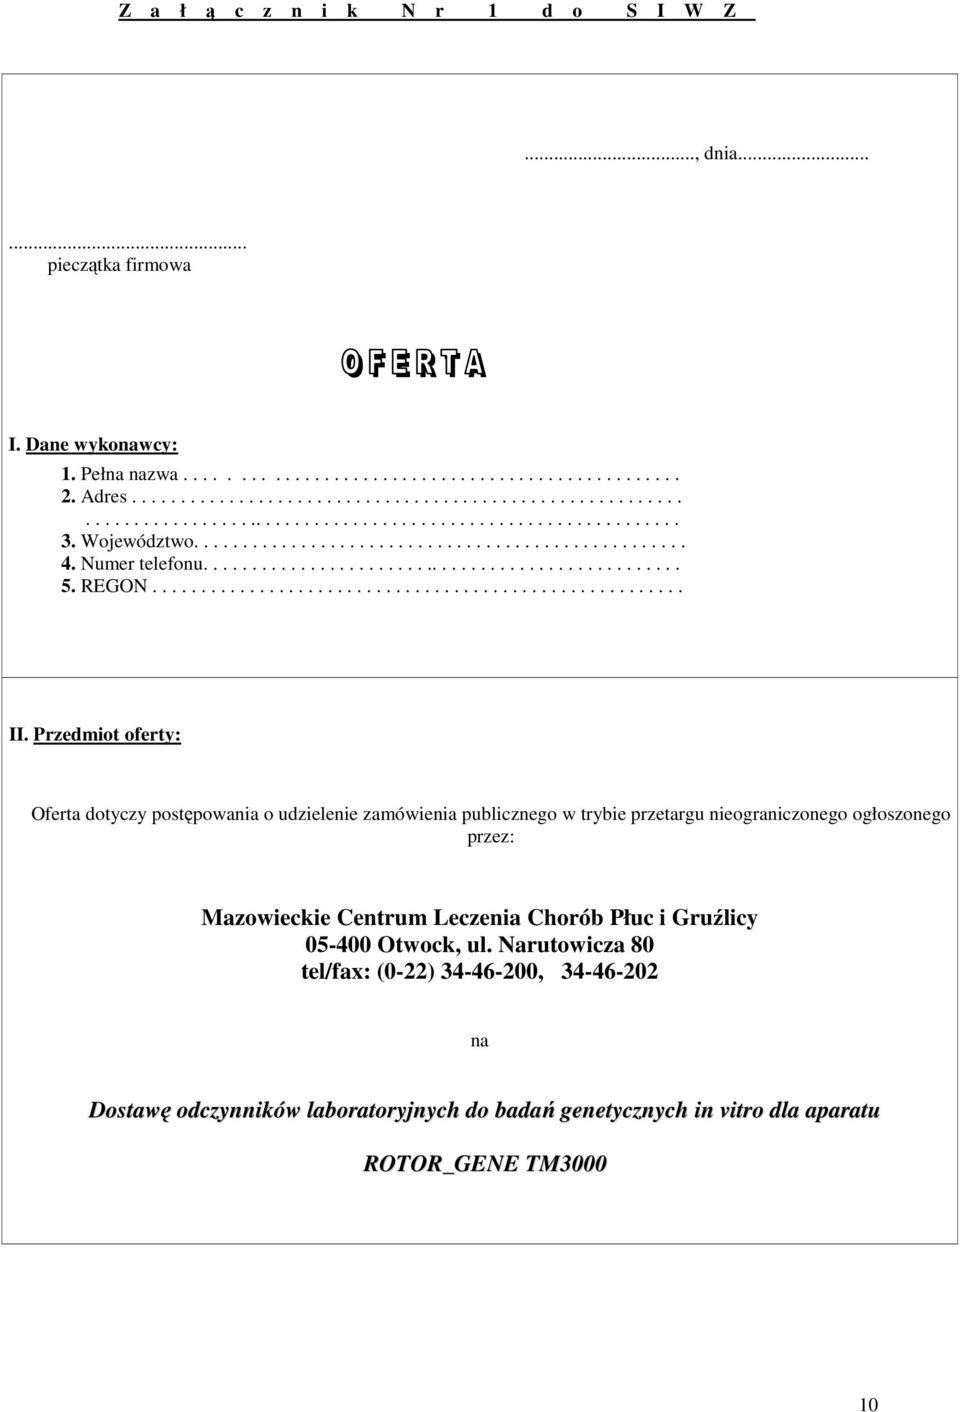 Przedmiot oferty: Oferta dotyczy postępowania o udzielenie zamówienia publicznego w trybie przetargu nieograniczonego ogłoszonego przez: Mazowieckie Centrum Leczenia Chorób Płuc i Gruźlicy 05-400